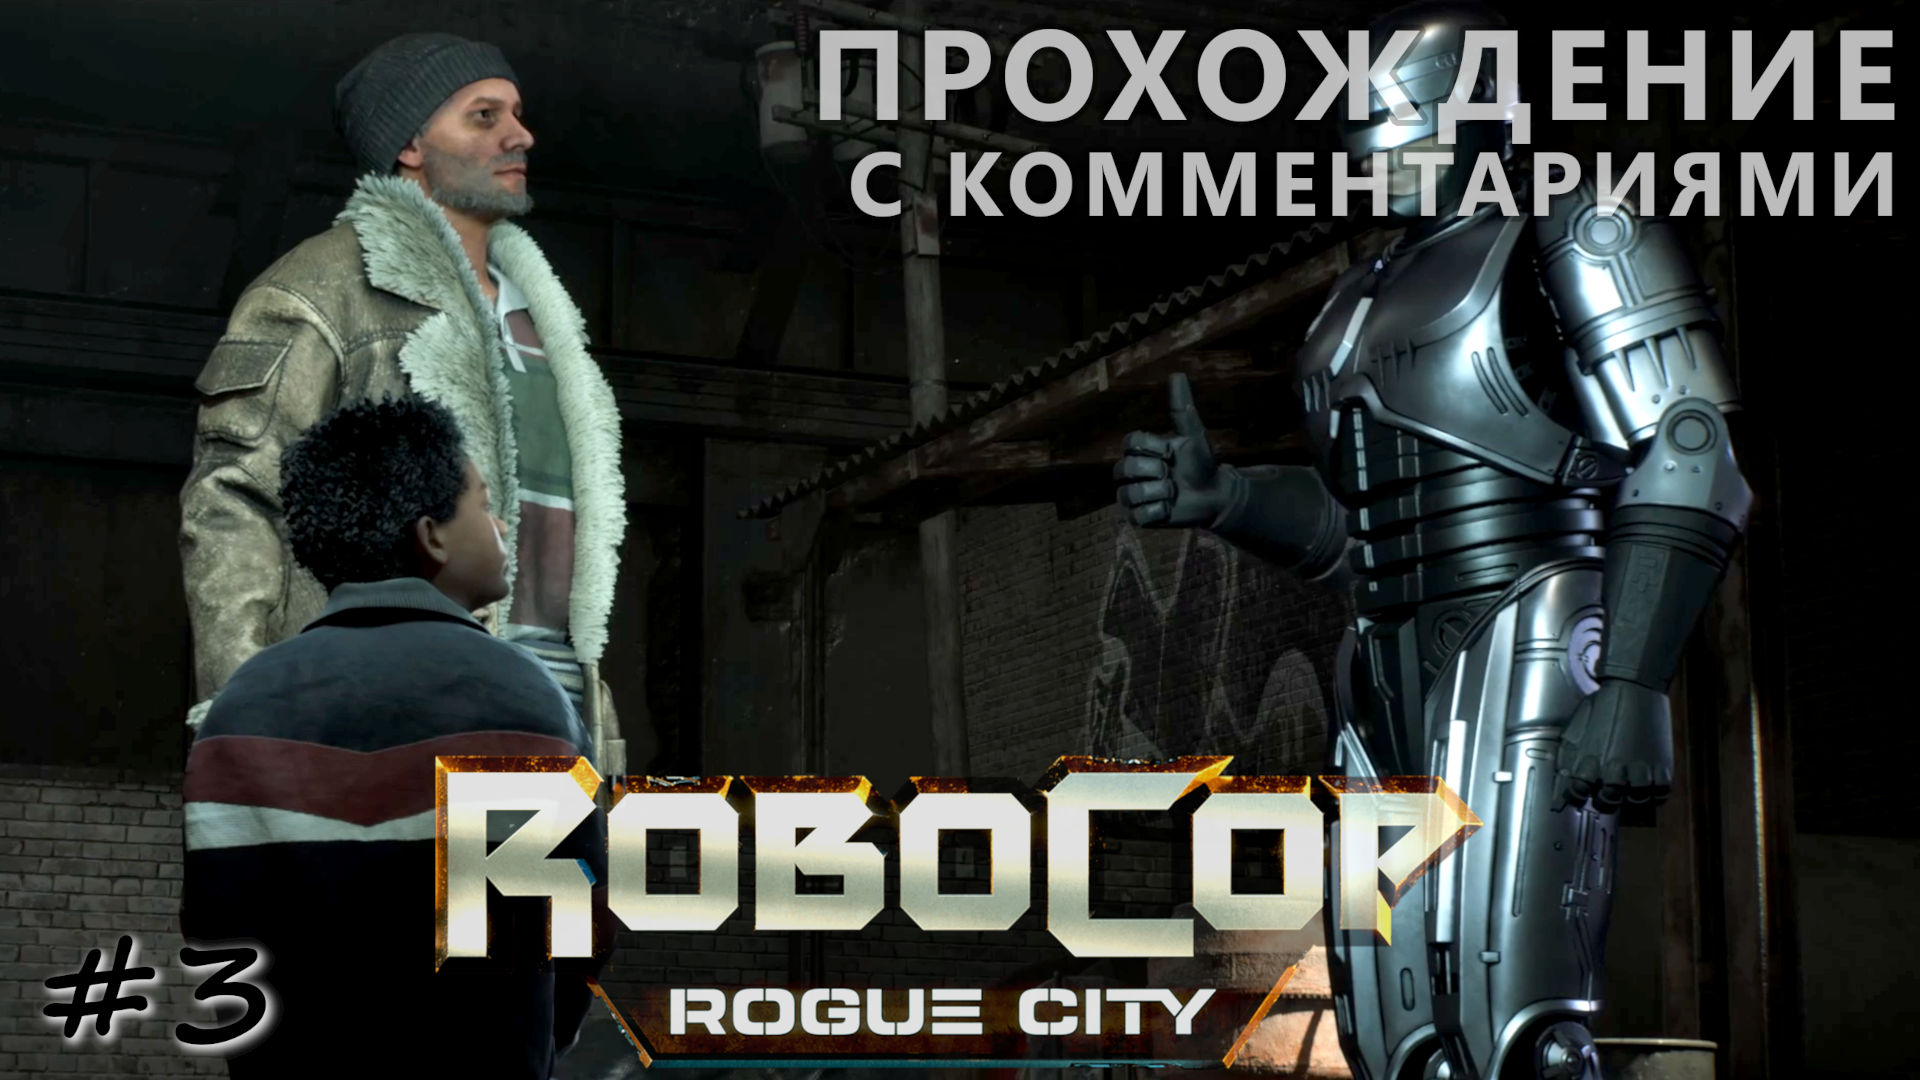 Спасение Огурчика и помощь семье офицера - #3 - RoboCop Rogue City